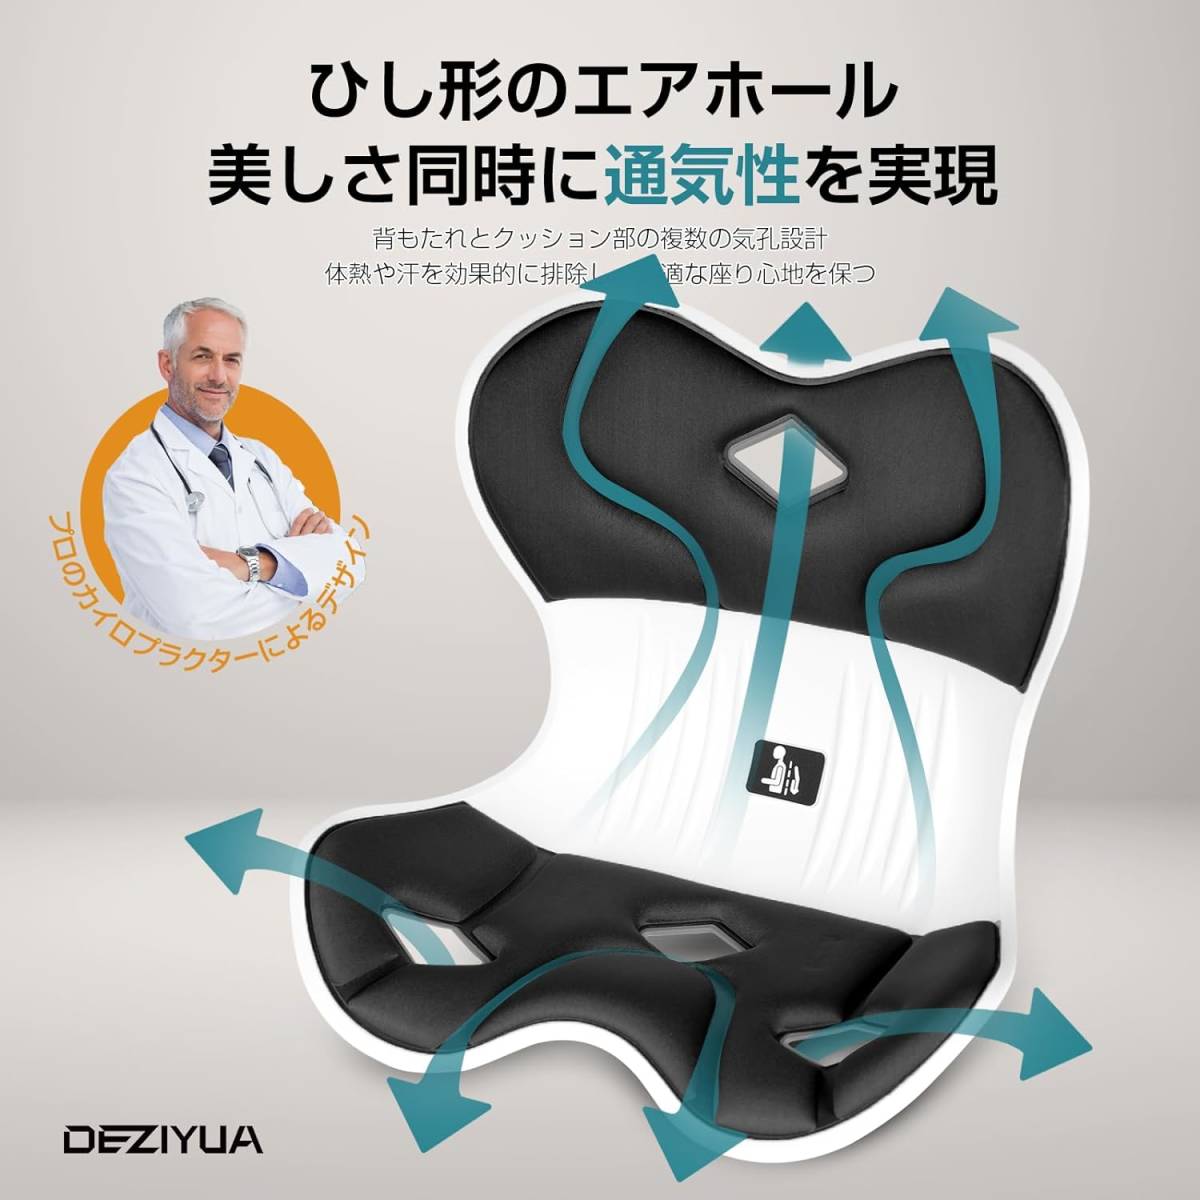 2個セット 姿勢矯正 椅子【DEZIYUA 腰痛 椅子】骨盤サポートチェア 骨盤から腰をサポート 高反発メモリー綿 姿勢矯正 軽量の画像6